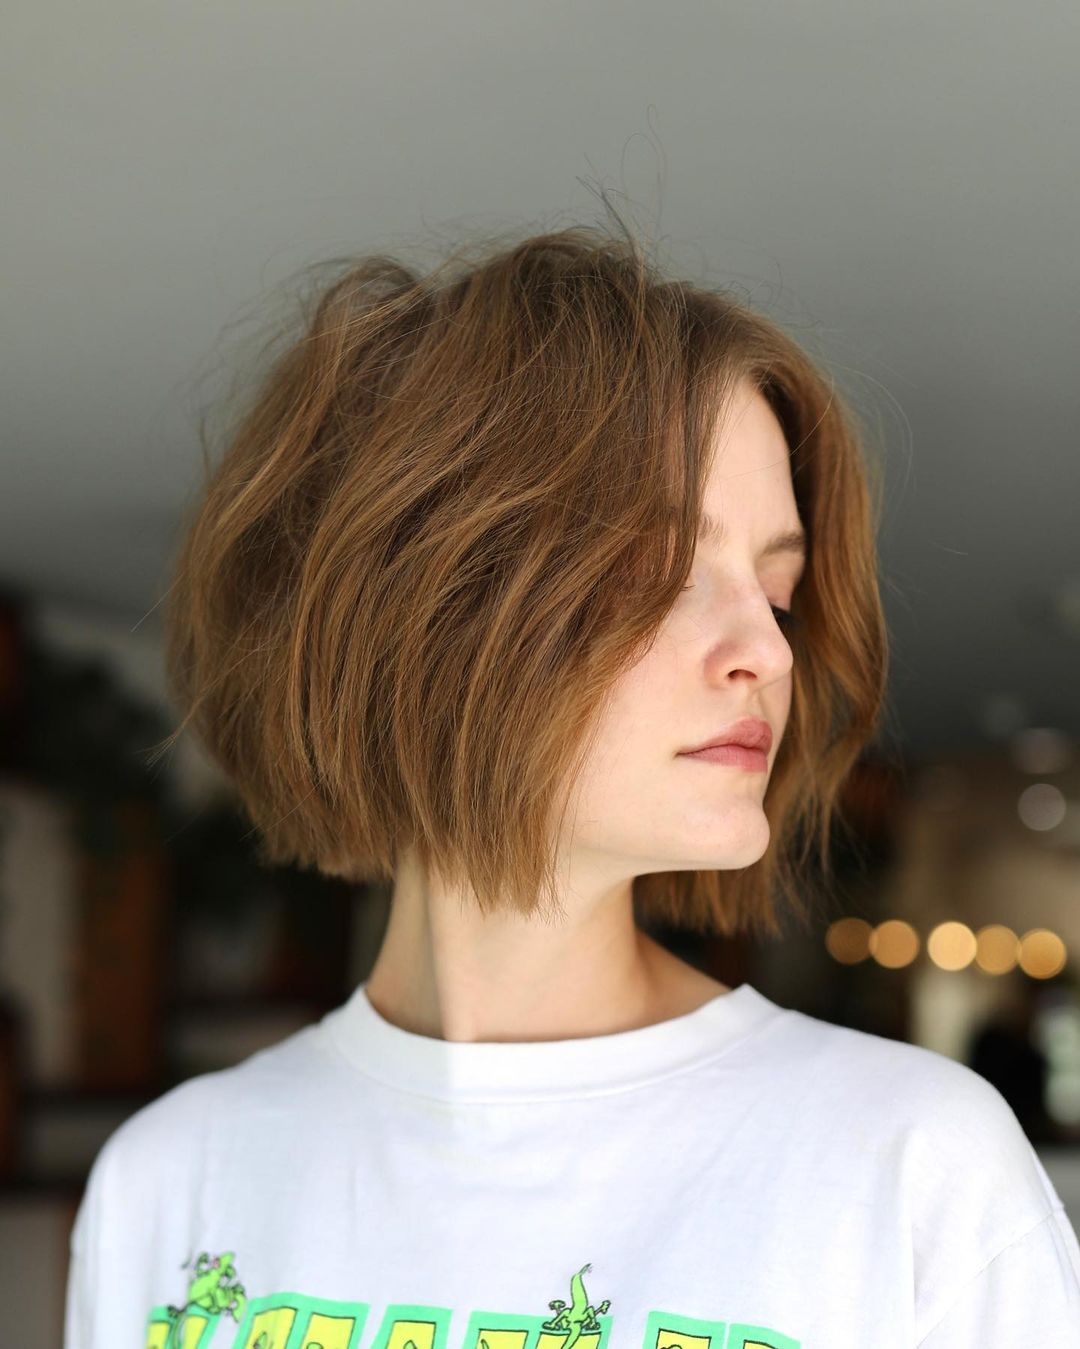 стрижка мягкий боб модная осень 2021 короткие волосы 